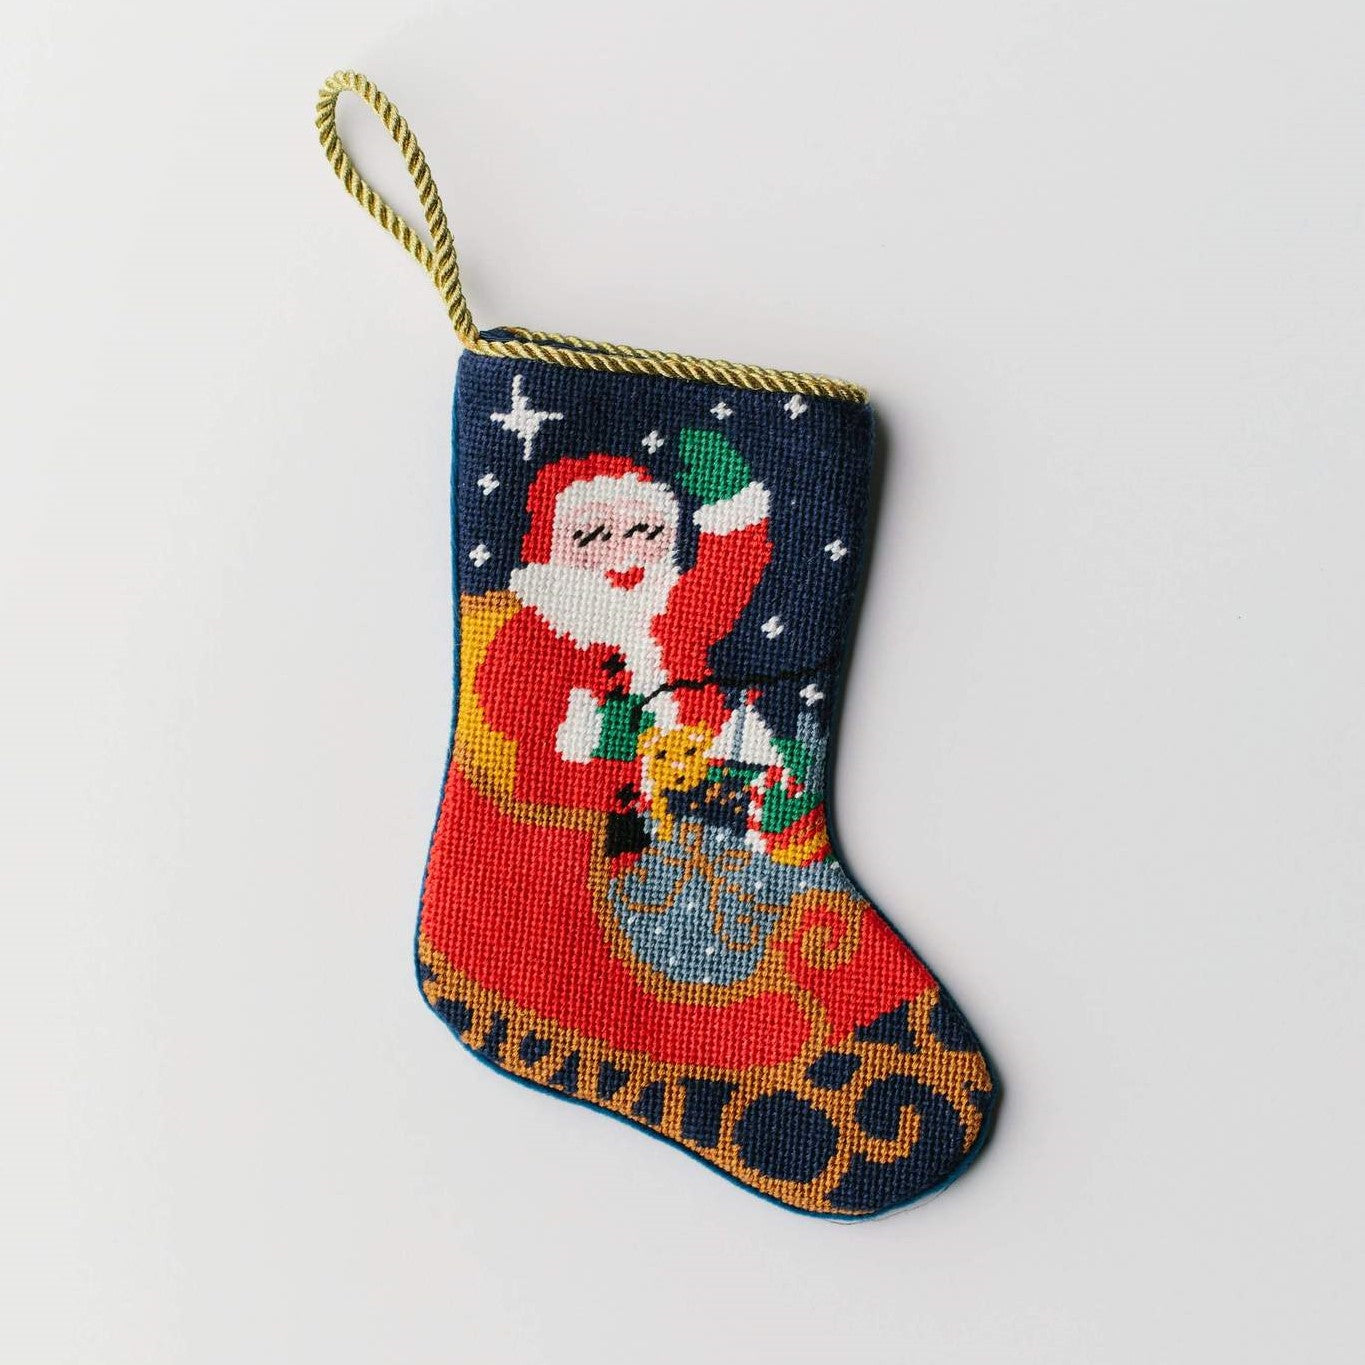 Needlepoint Stocking - Santa's Sleigh Ride